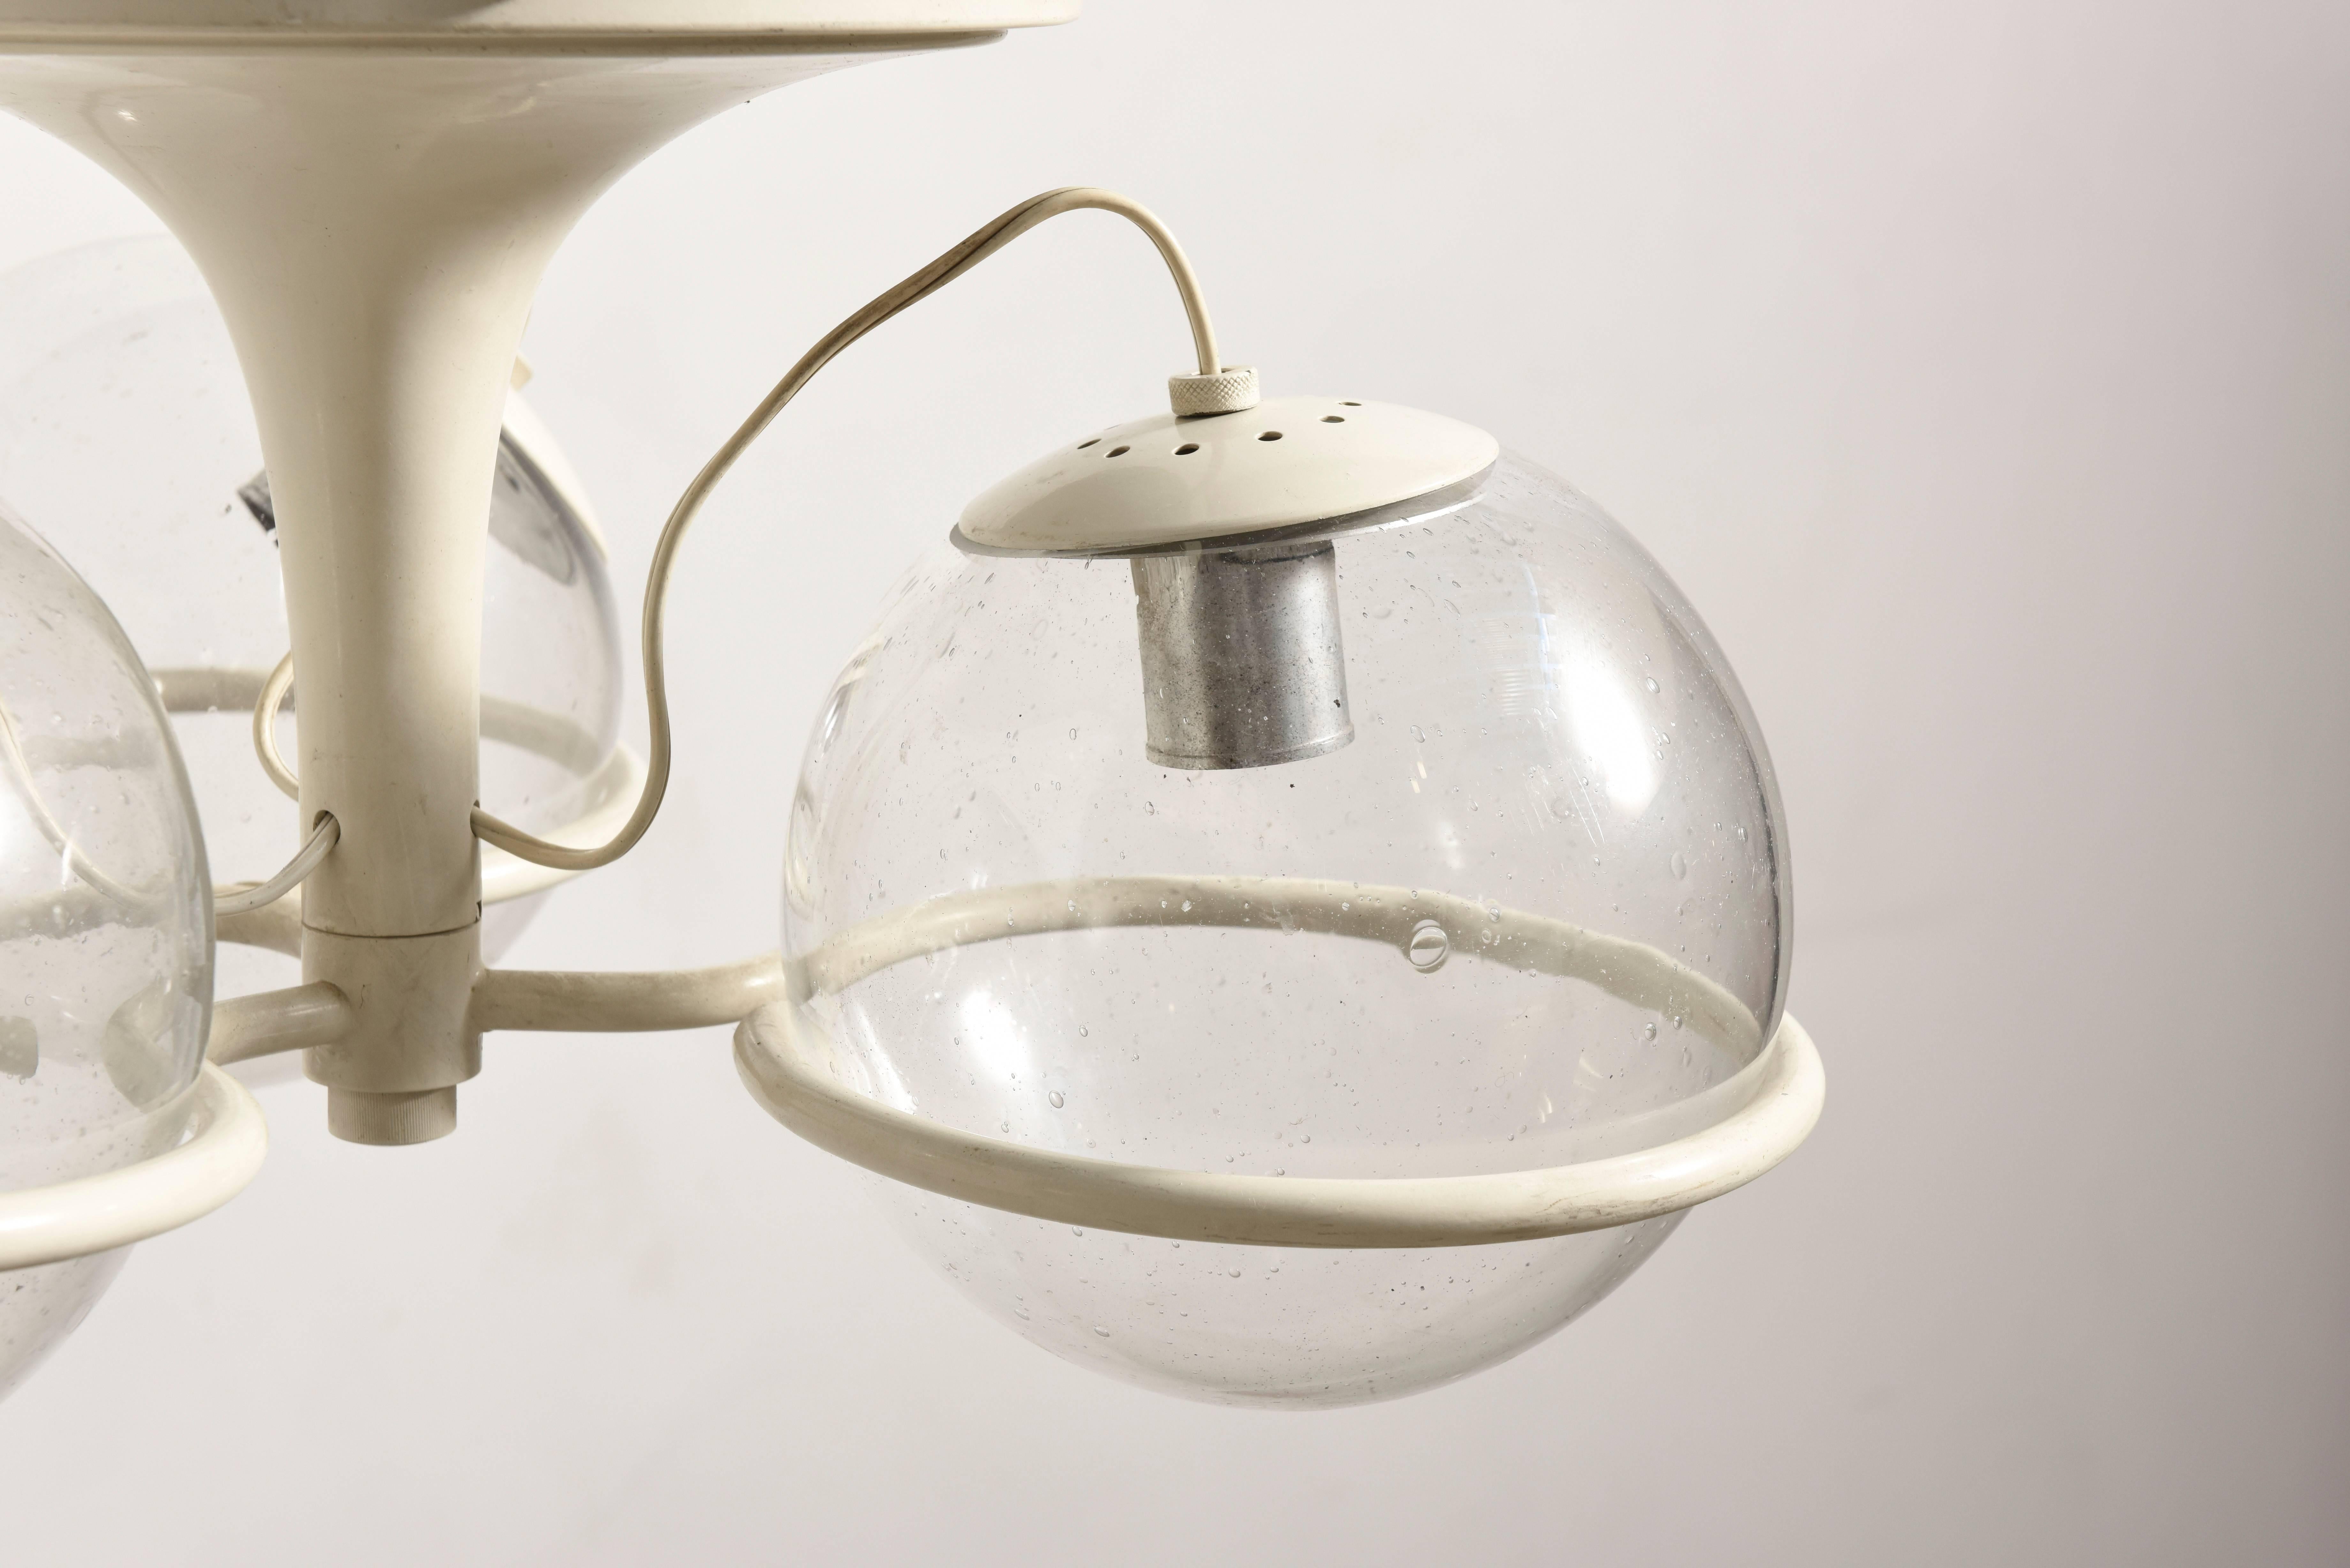 Mid-Century Modern Gino Sarfatti Lighting Fixture, Model 2042/3 for Arteluce, Italy, 1963